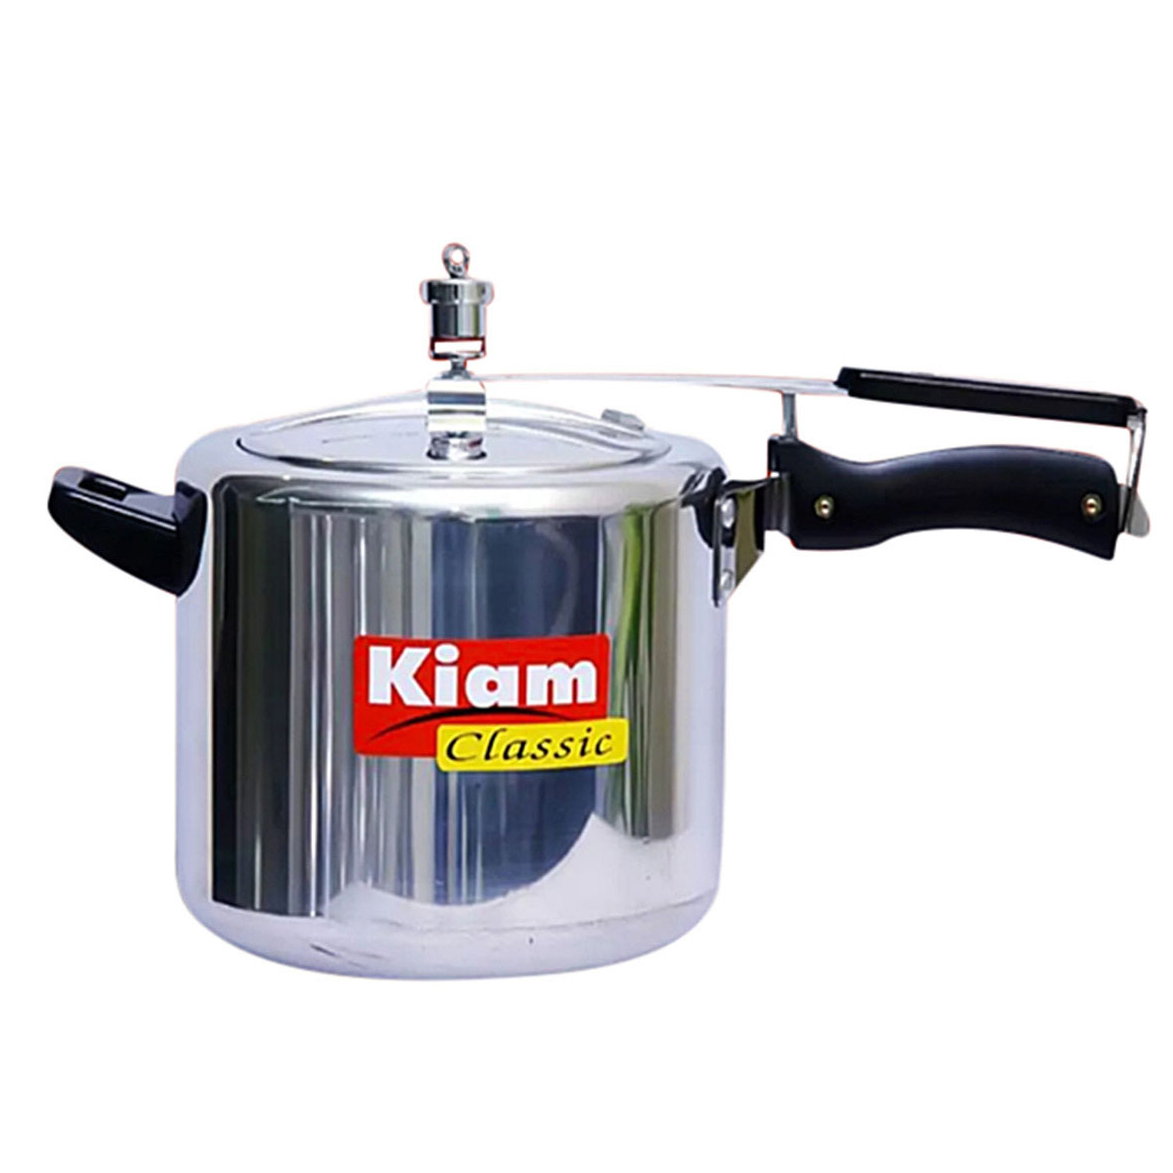 Kiam Classic Pressure Cooker - 2.5 Liter - Silver